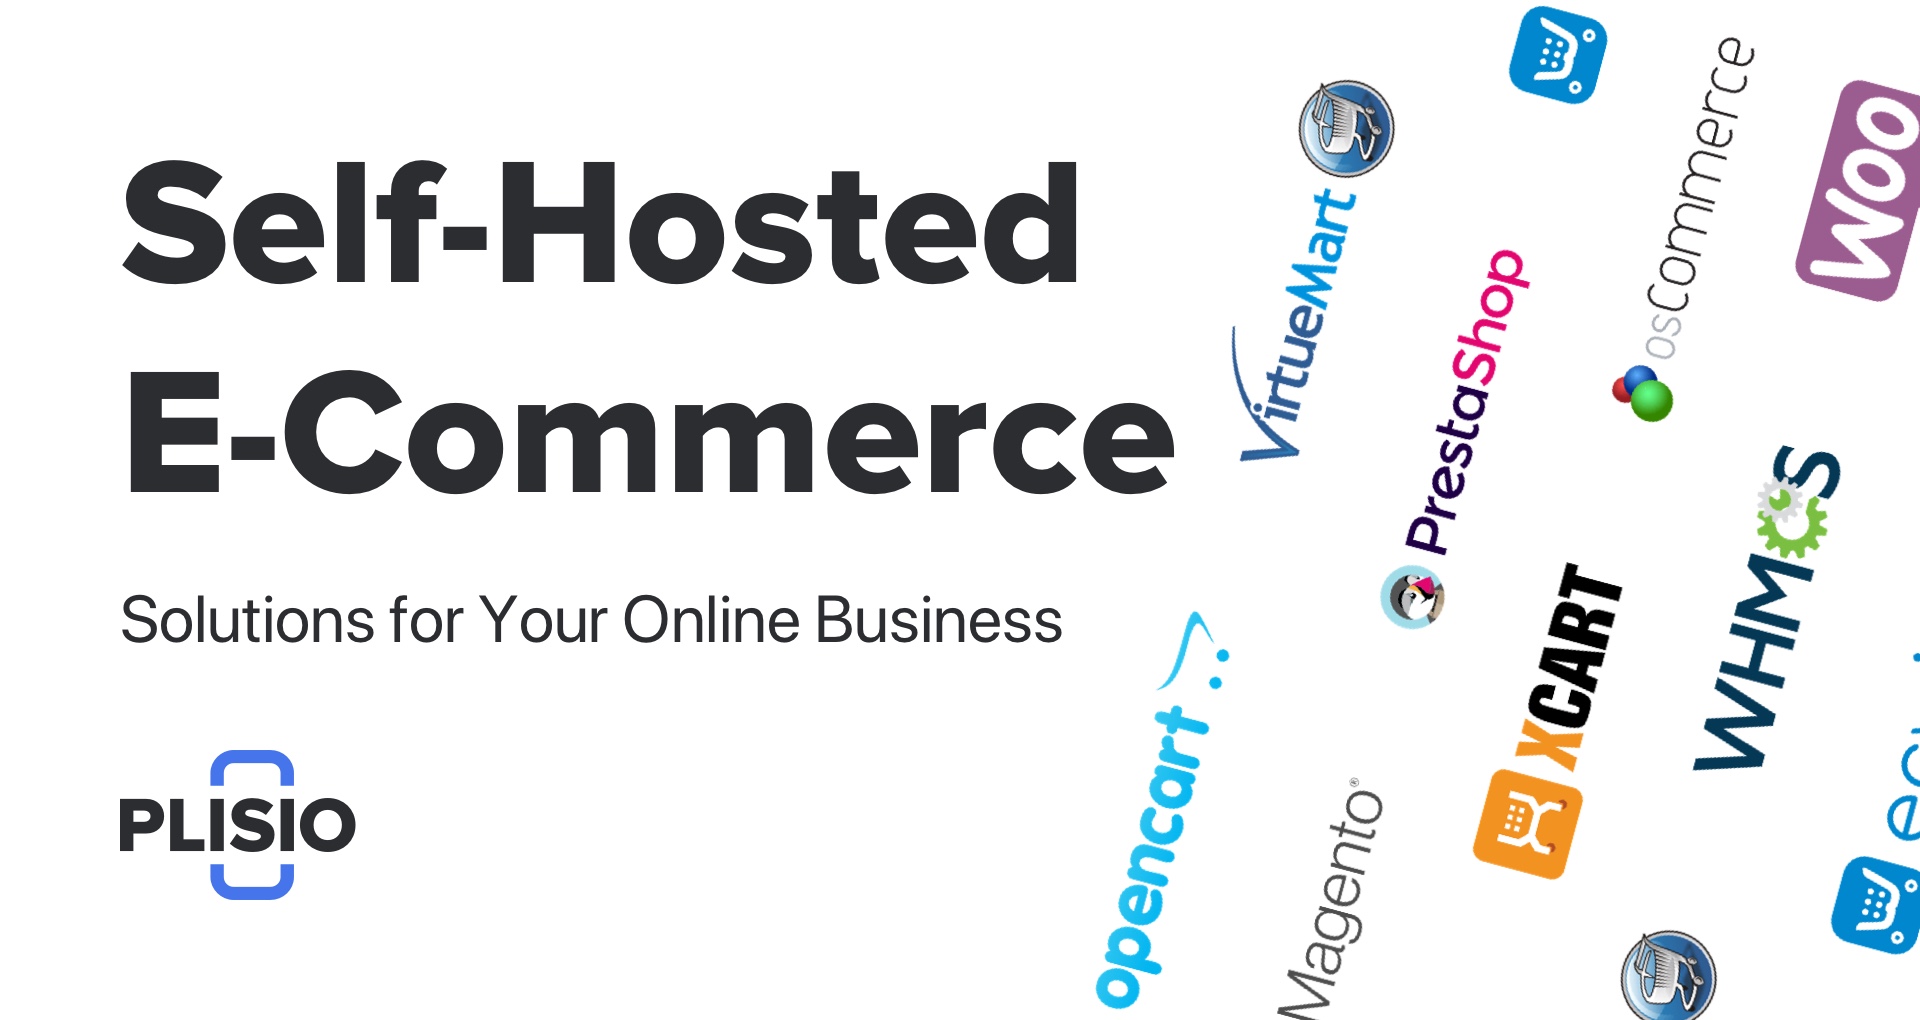 Najlepsze rozwiązania e-commerce na własnym serwerze dla Twojego biznesu internetowego